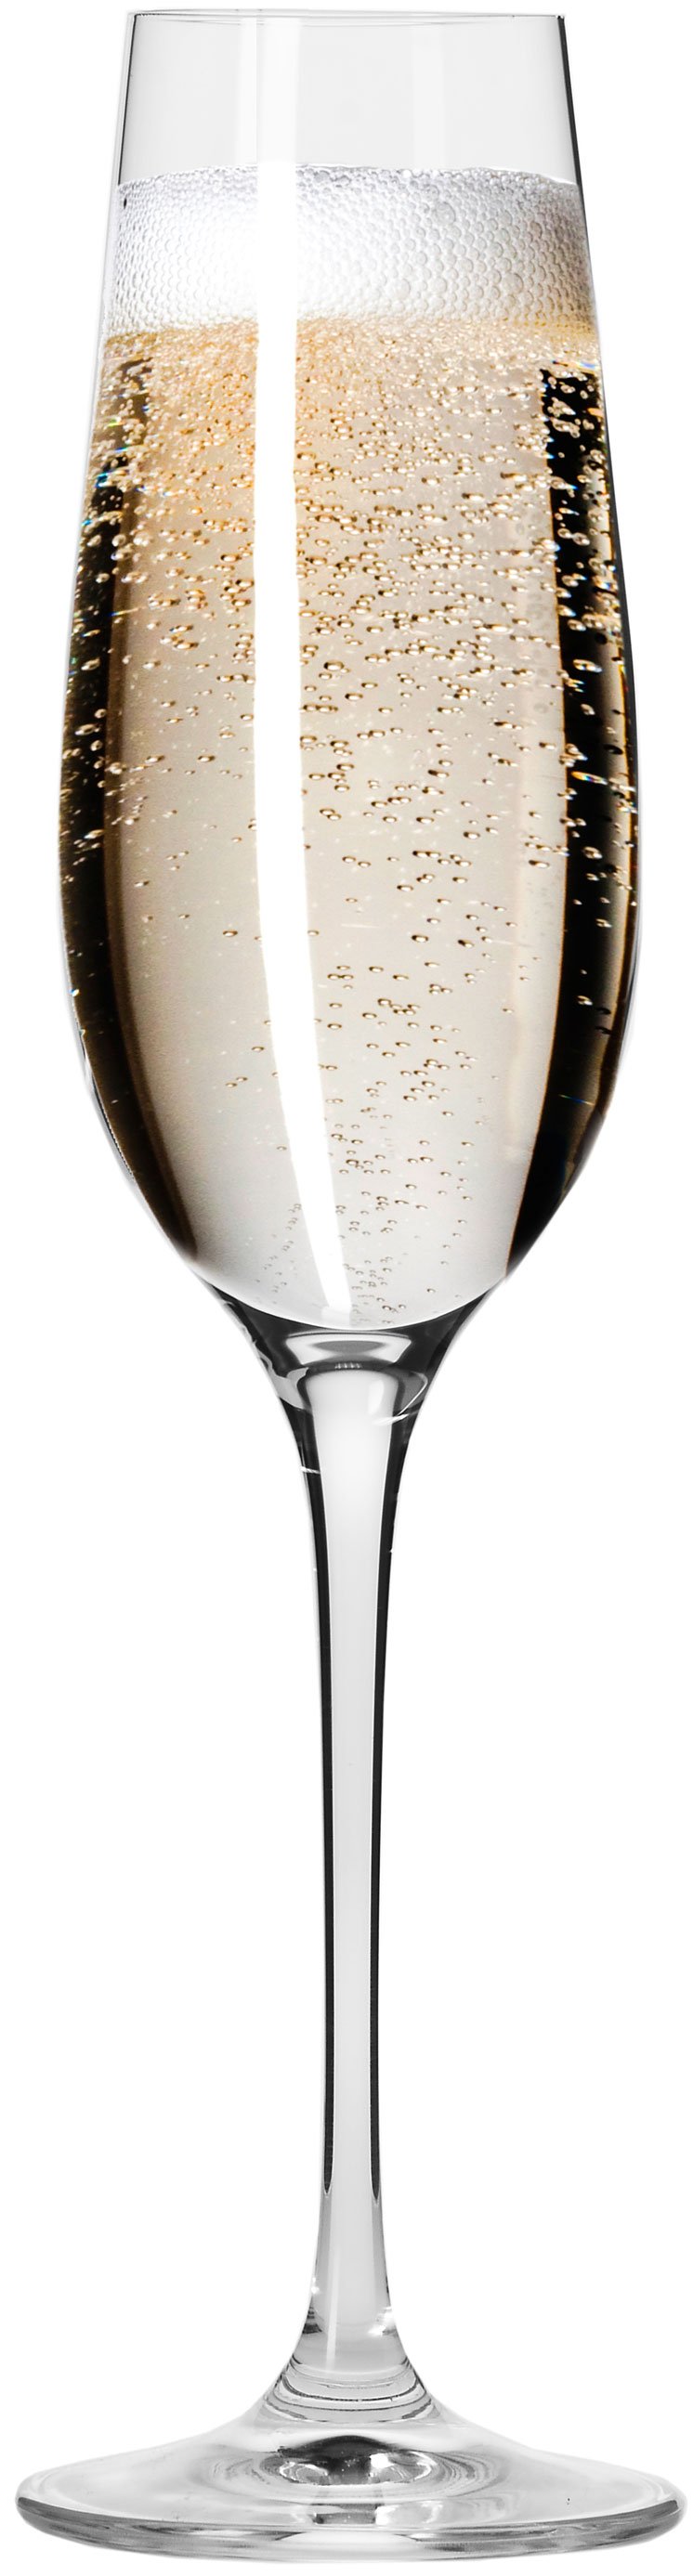 סט 6 כוסות שמפניה Krosno 180 מ”ל Harmony Collection Champagne Flute